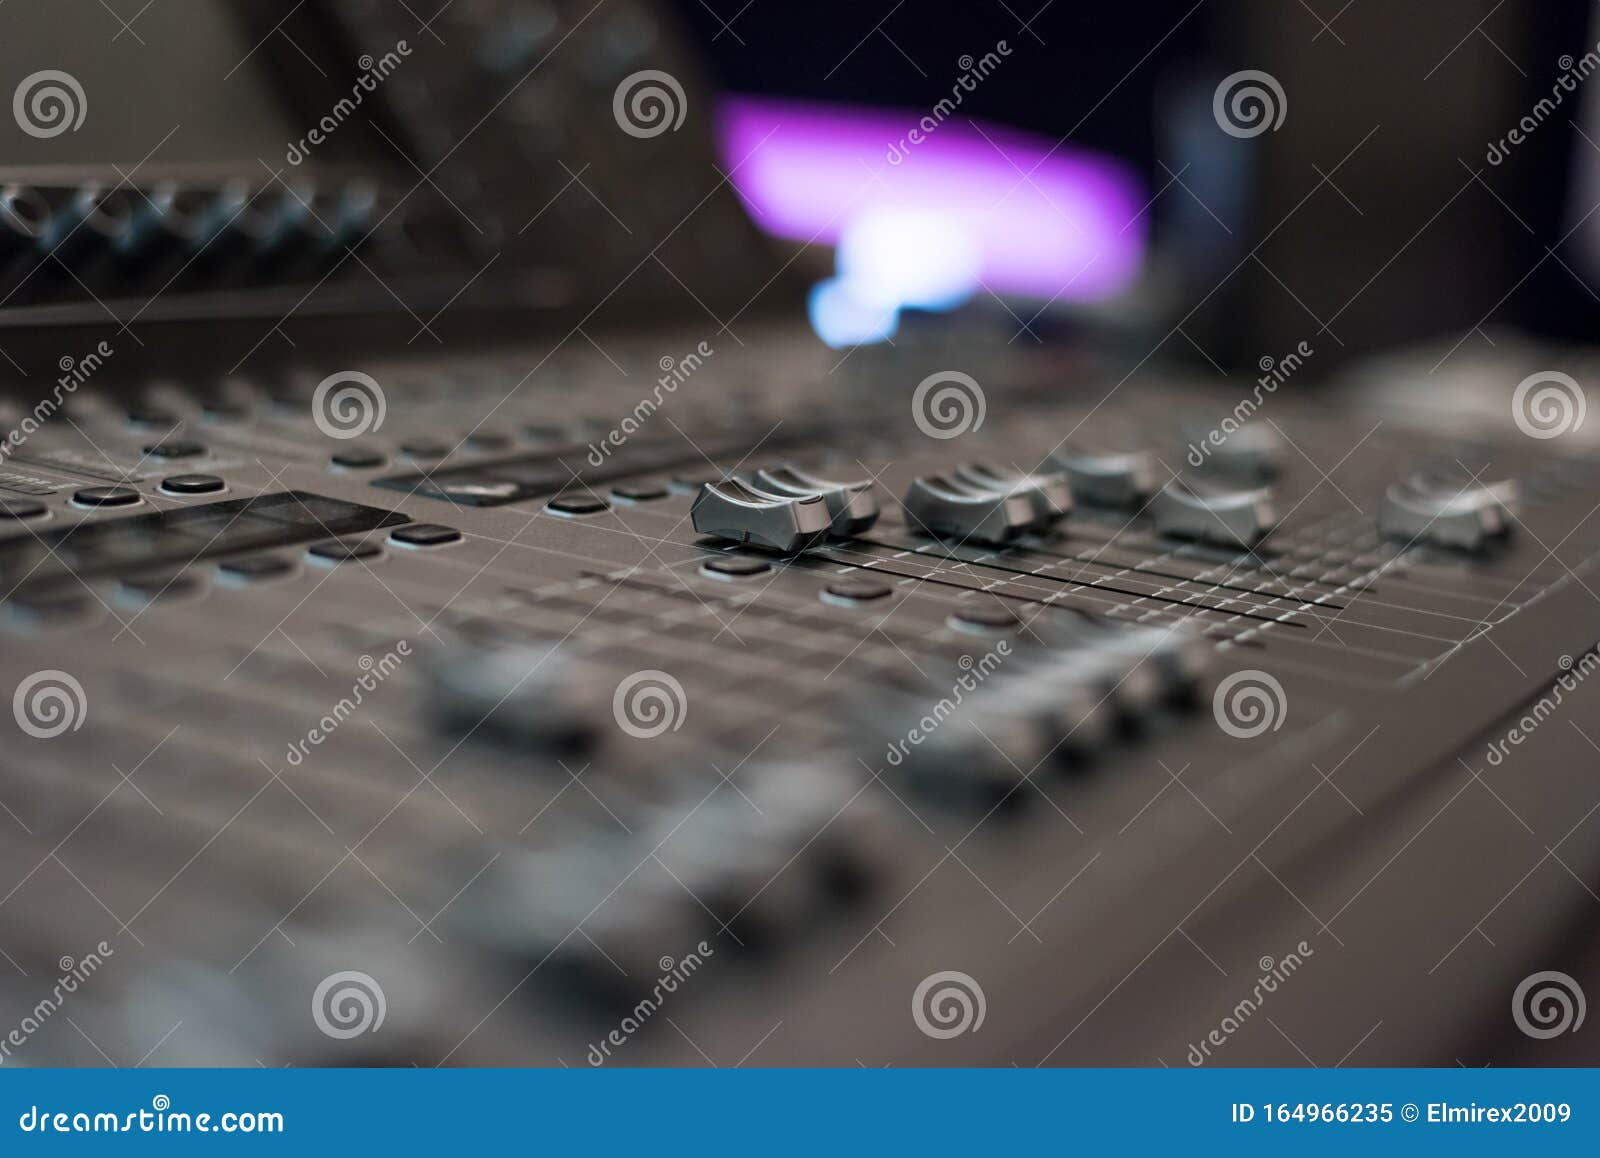 Consola Mezcladora De Sonido De Audio Mezclador De Audio, Equipo De Música  Herramientas De Radiodifusión, Mezclador, Sintetizador Imagen de archivo -  Imagen de nivel, mezclador: 164966235